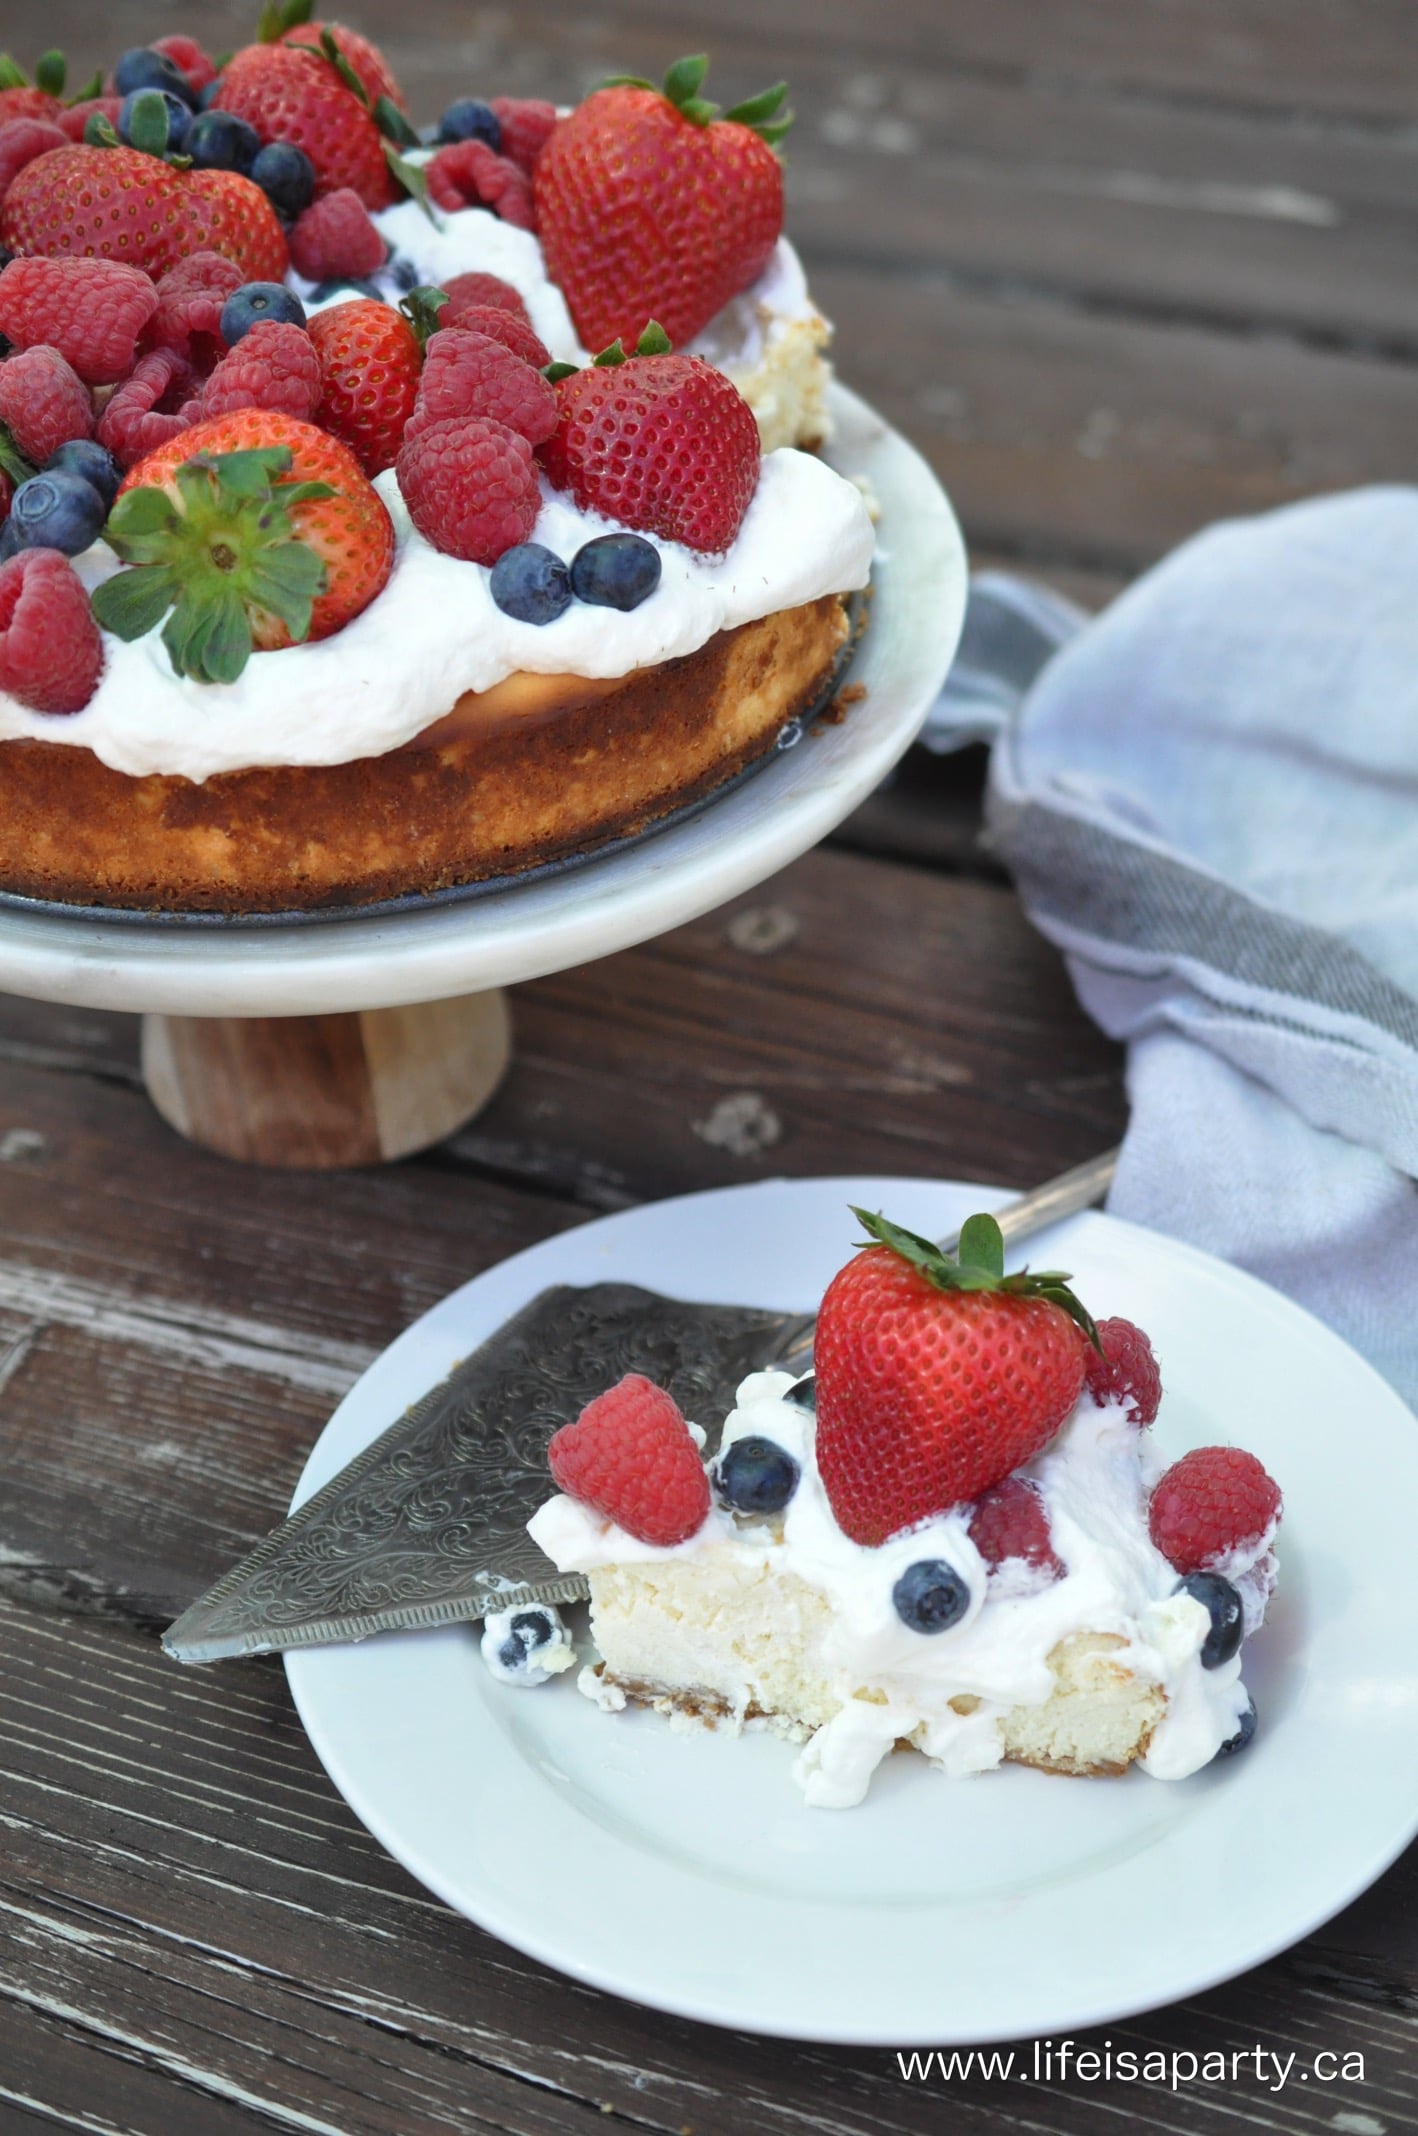 Classic Cheesecake recipe with fresh berries